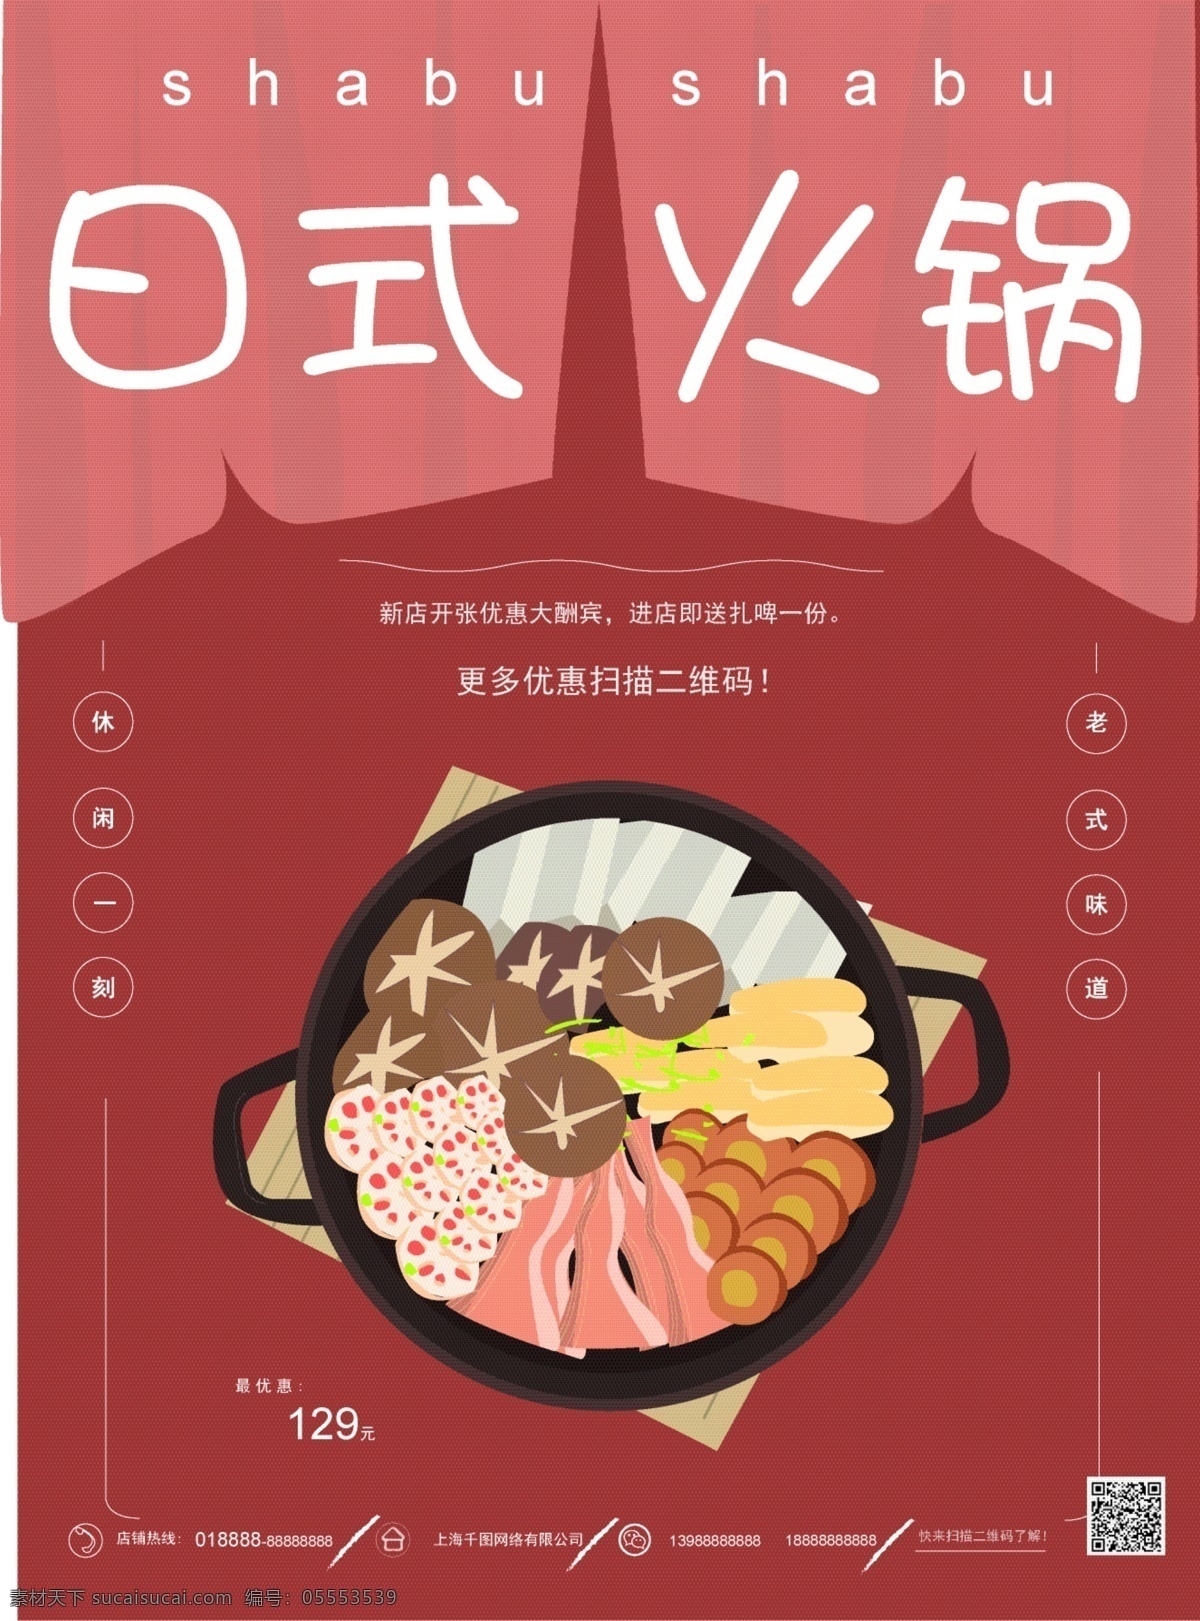 原创 手绘 日式 火锅 海报 美食 促销